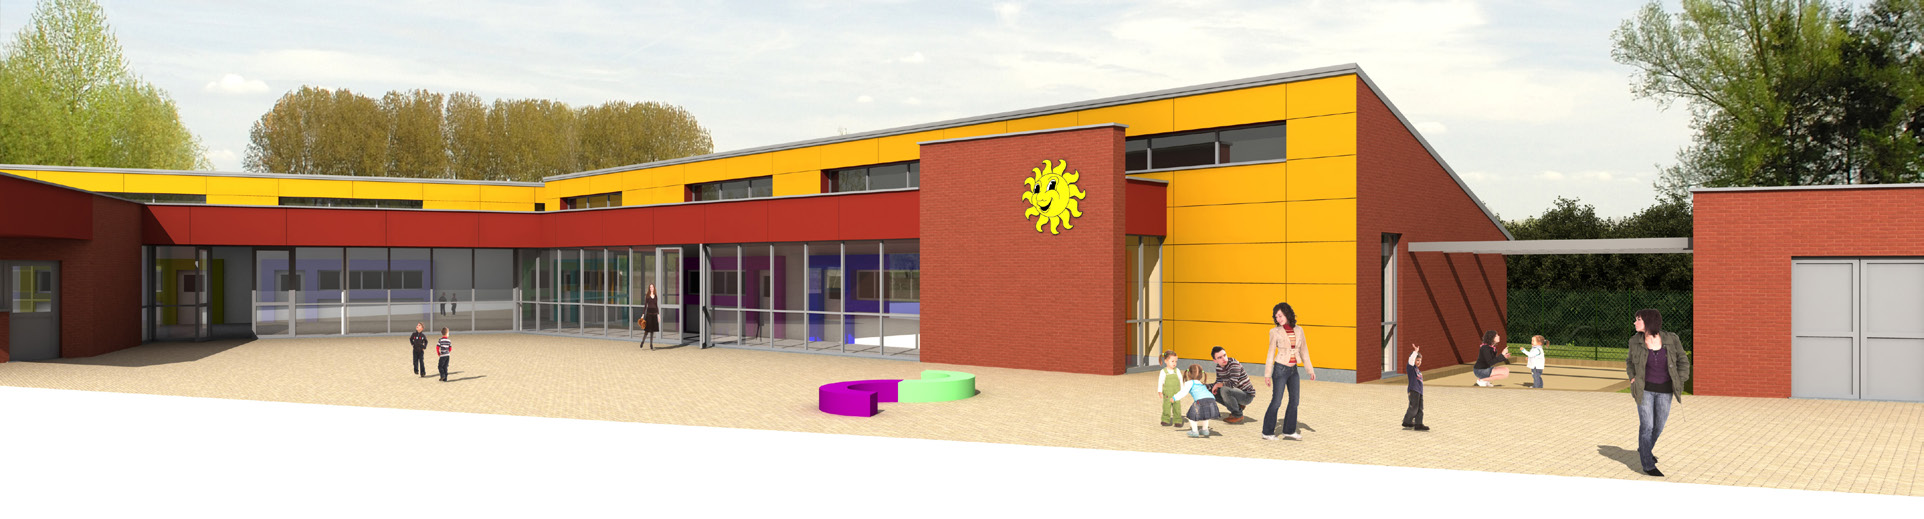 de basisschool Derde fase: nieuwbouw kleuterschool voor 200 kinderen Verbouwing, uitbreiding en